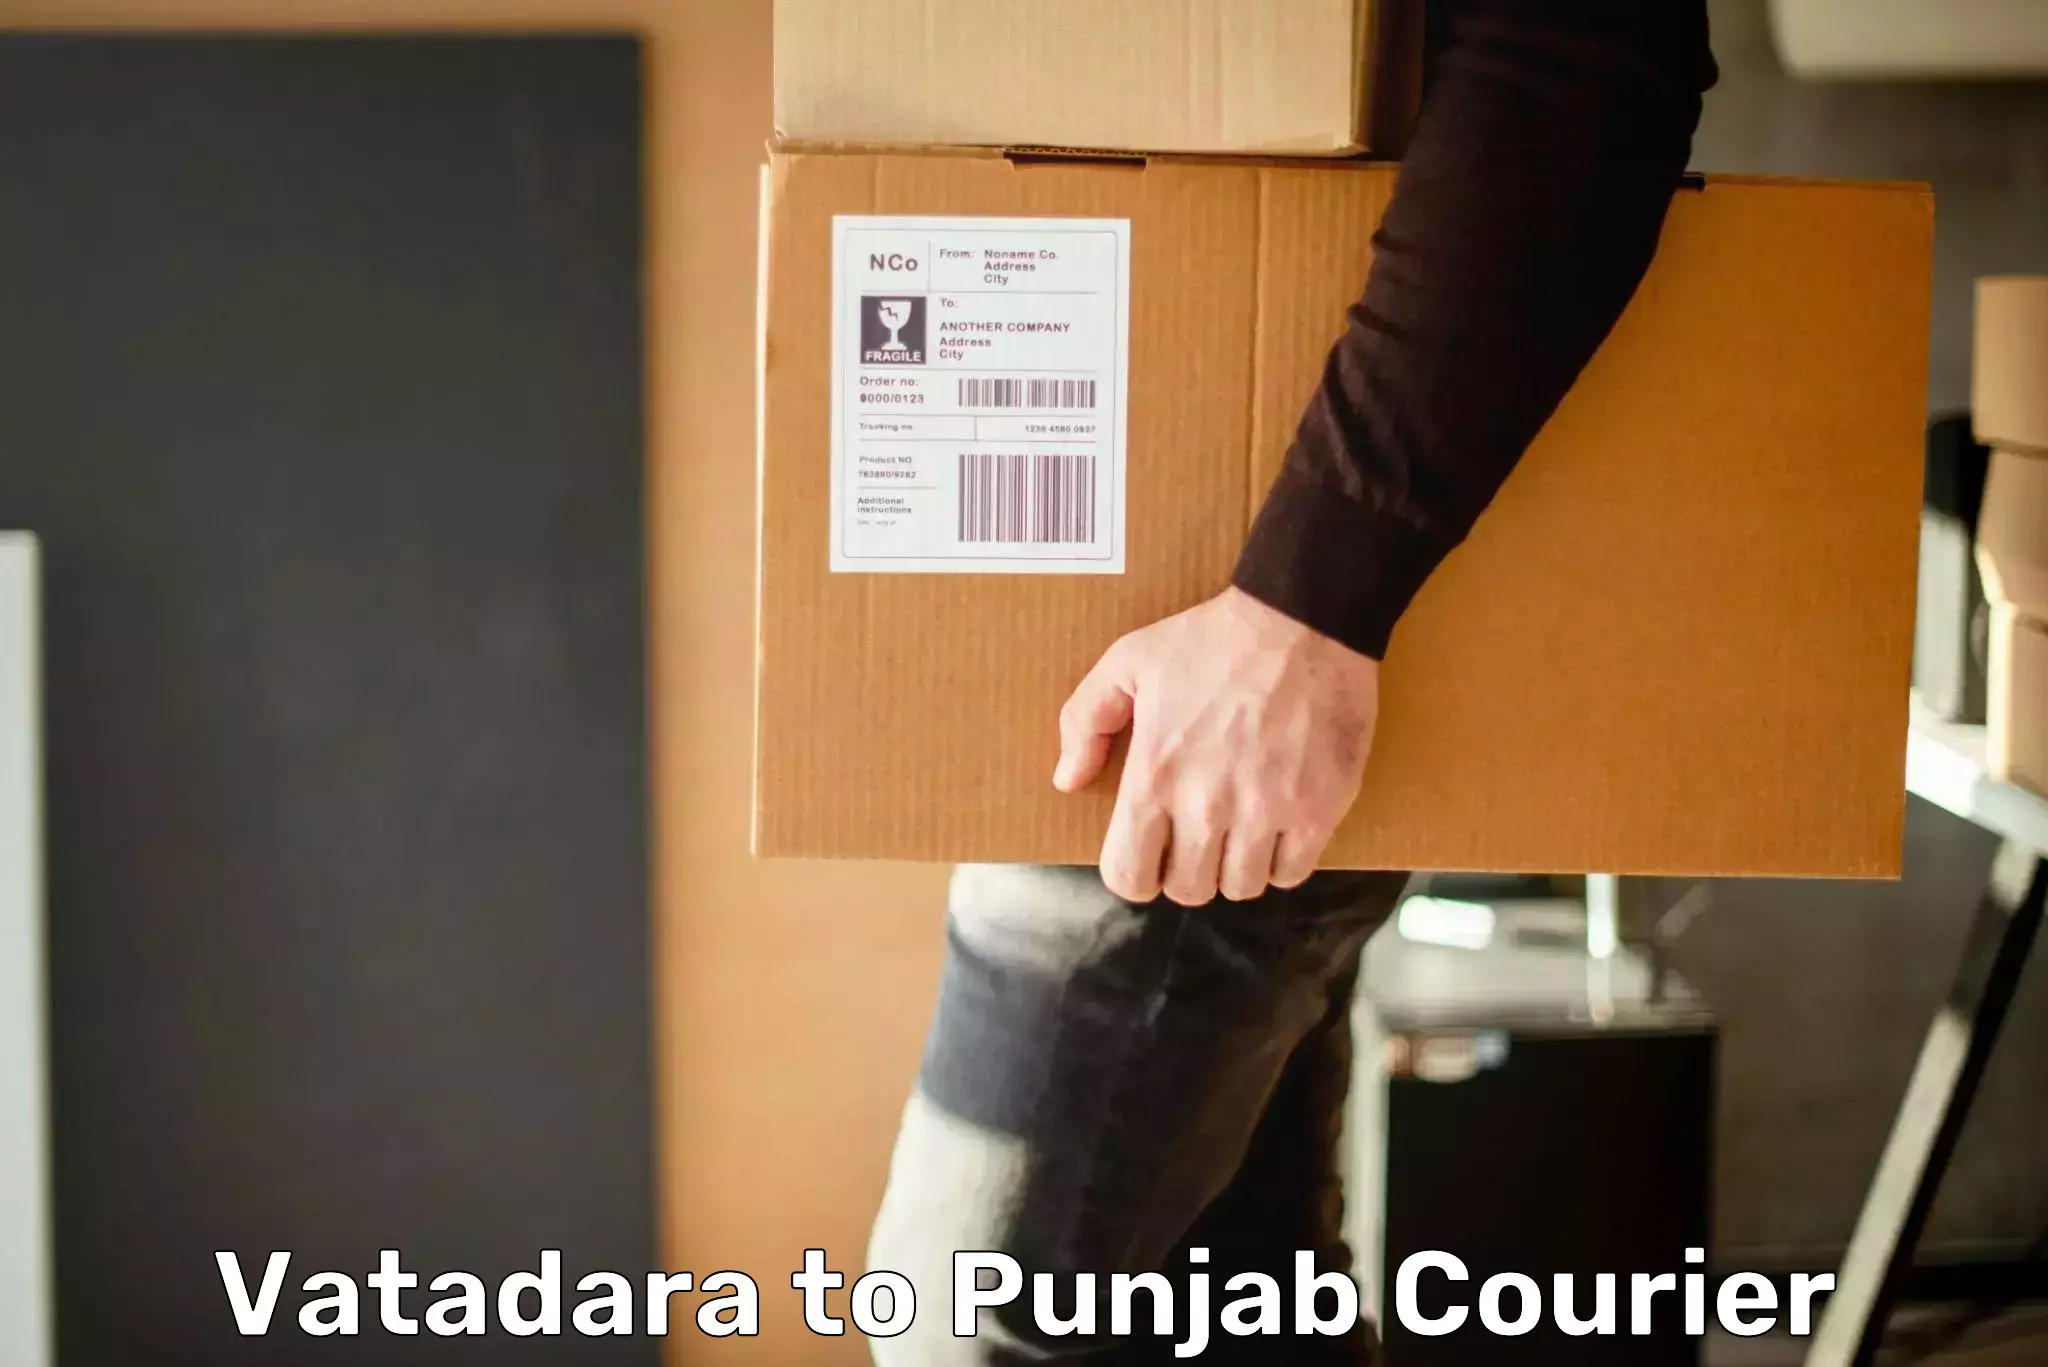 Reliable courier service Vatadara to Beas